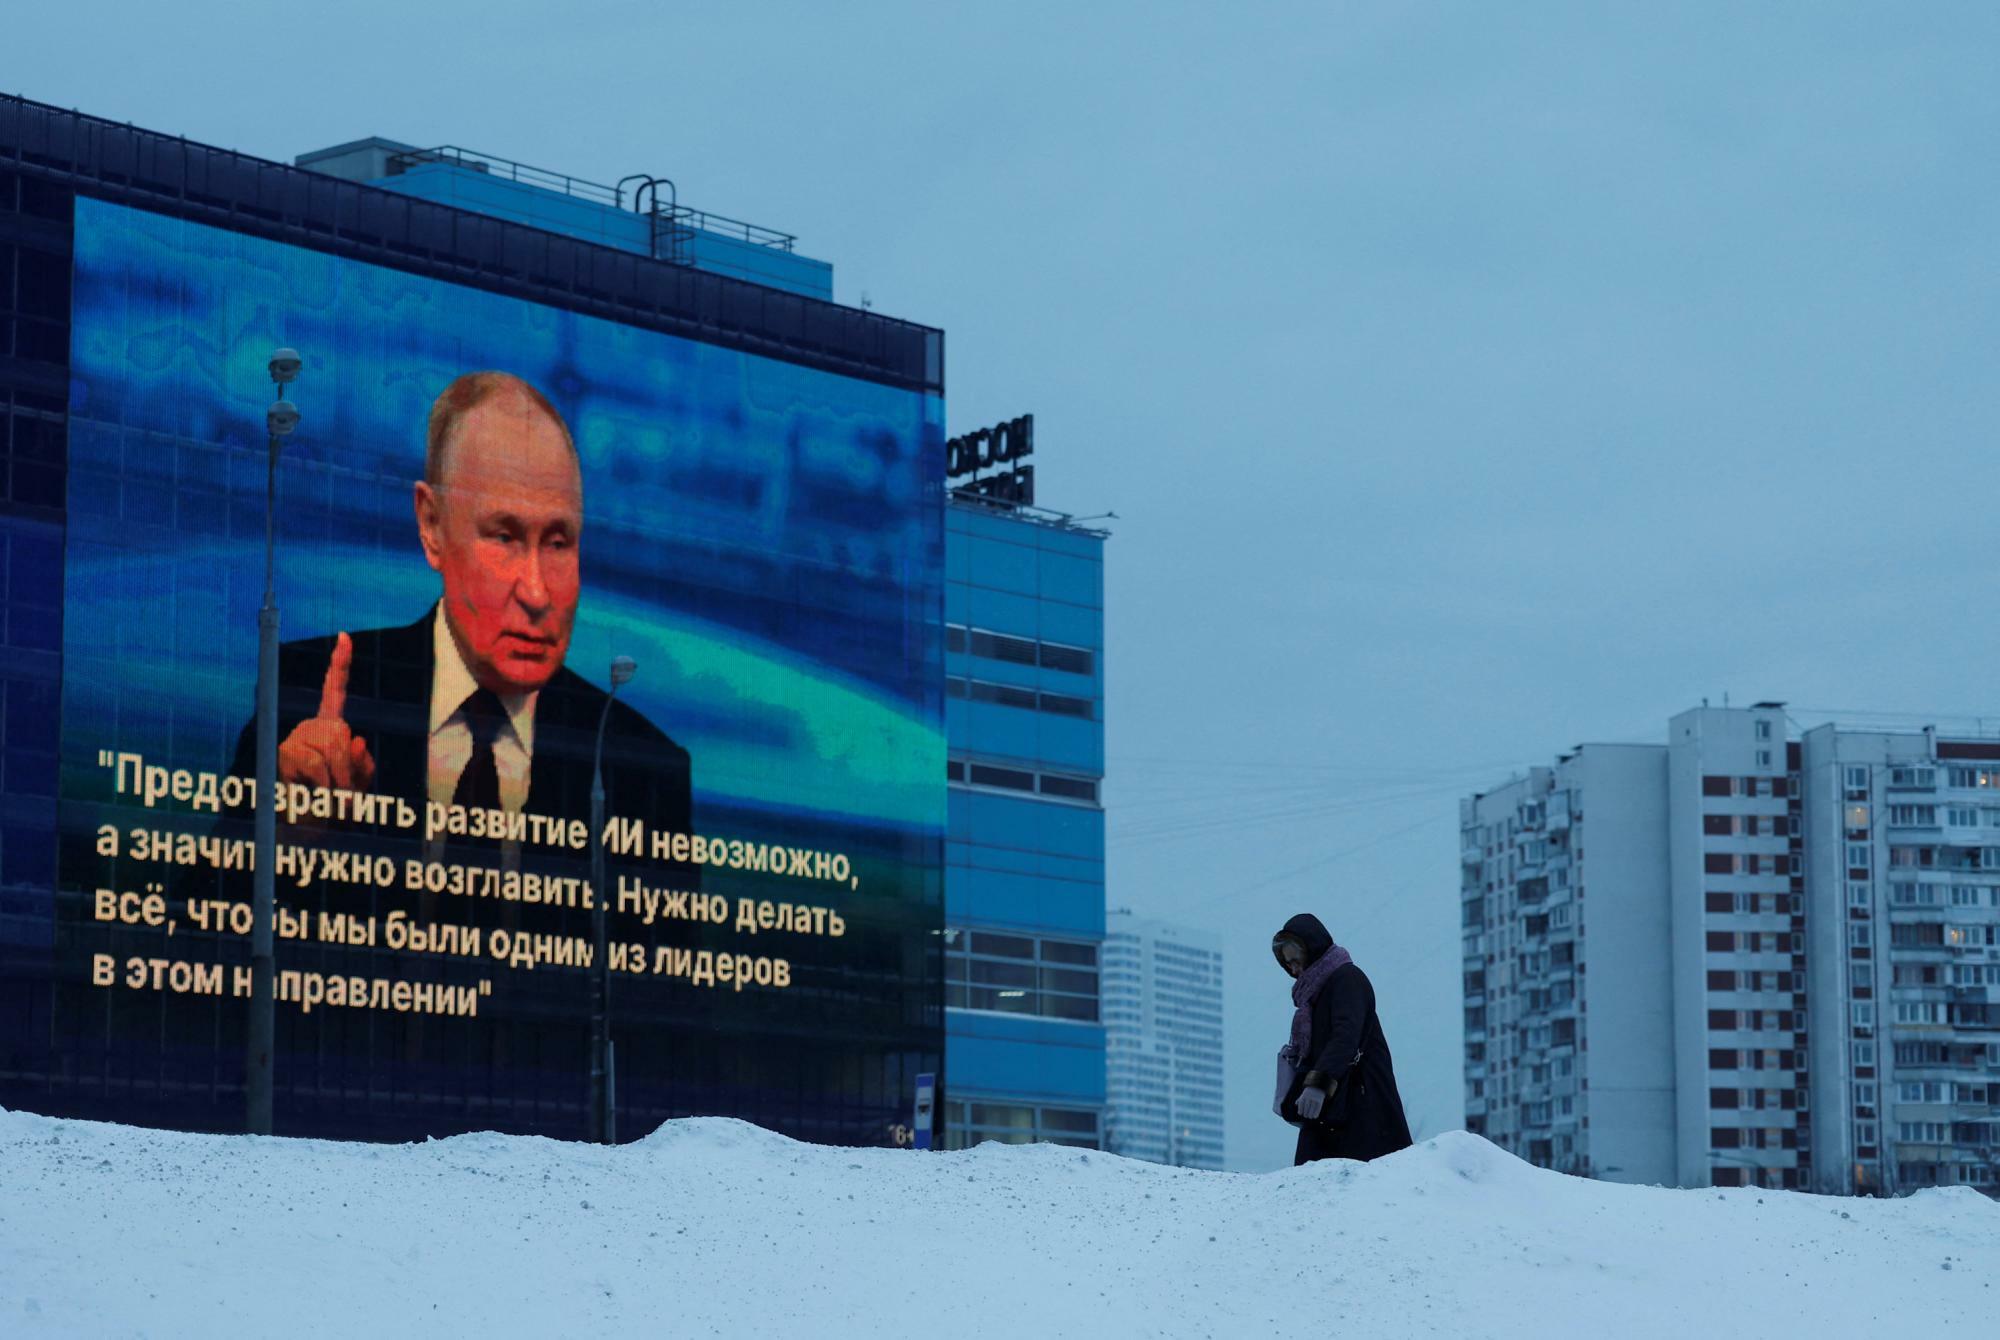 12月14日モスクワで、プーチン大統領の「国民との対話」番組からの引用が表示された建物のファサード。自動翻訳によれば、AIを防ぐことは不可能なので我々が主導する必要がある、といった内容だ。